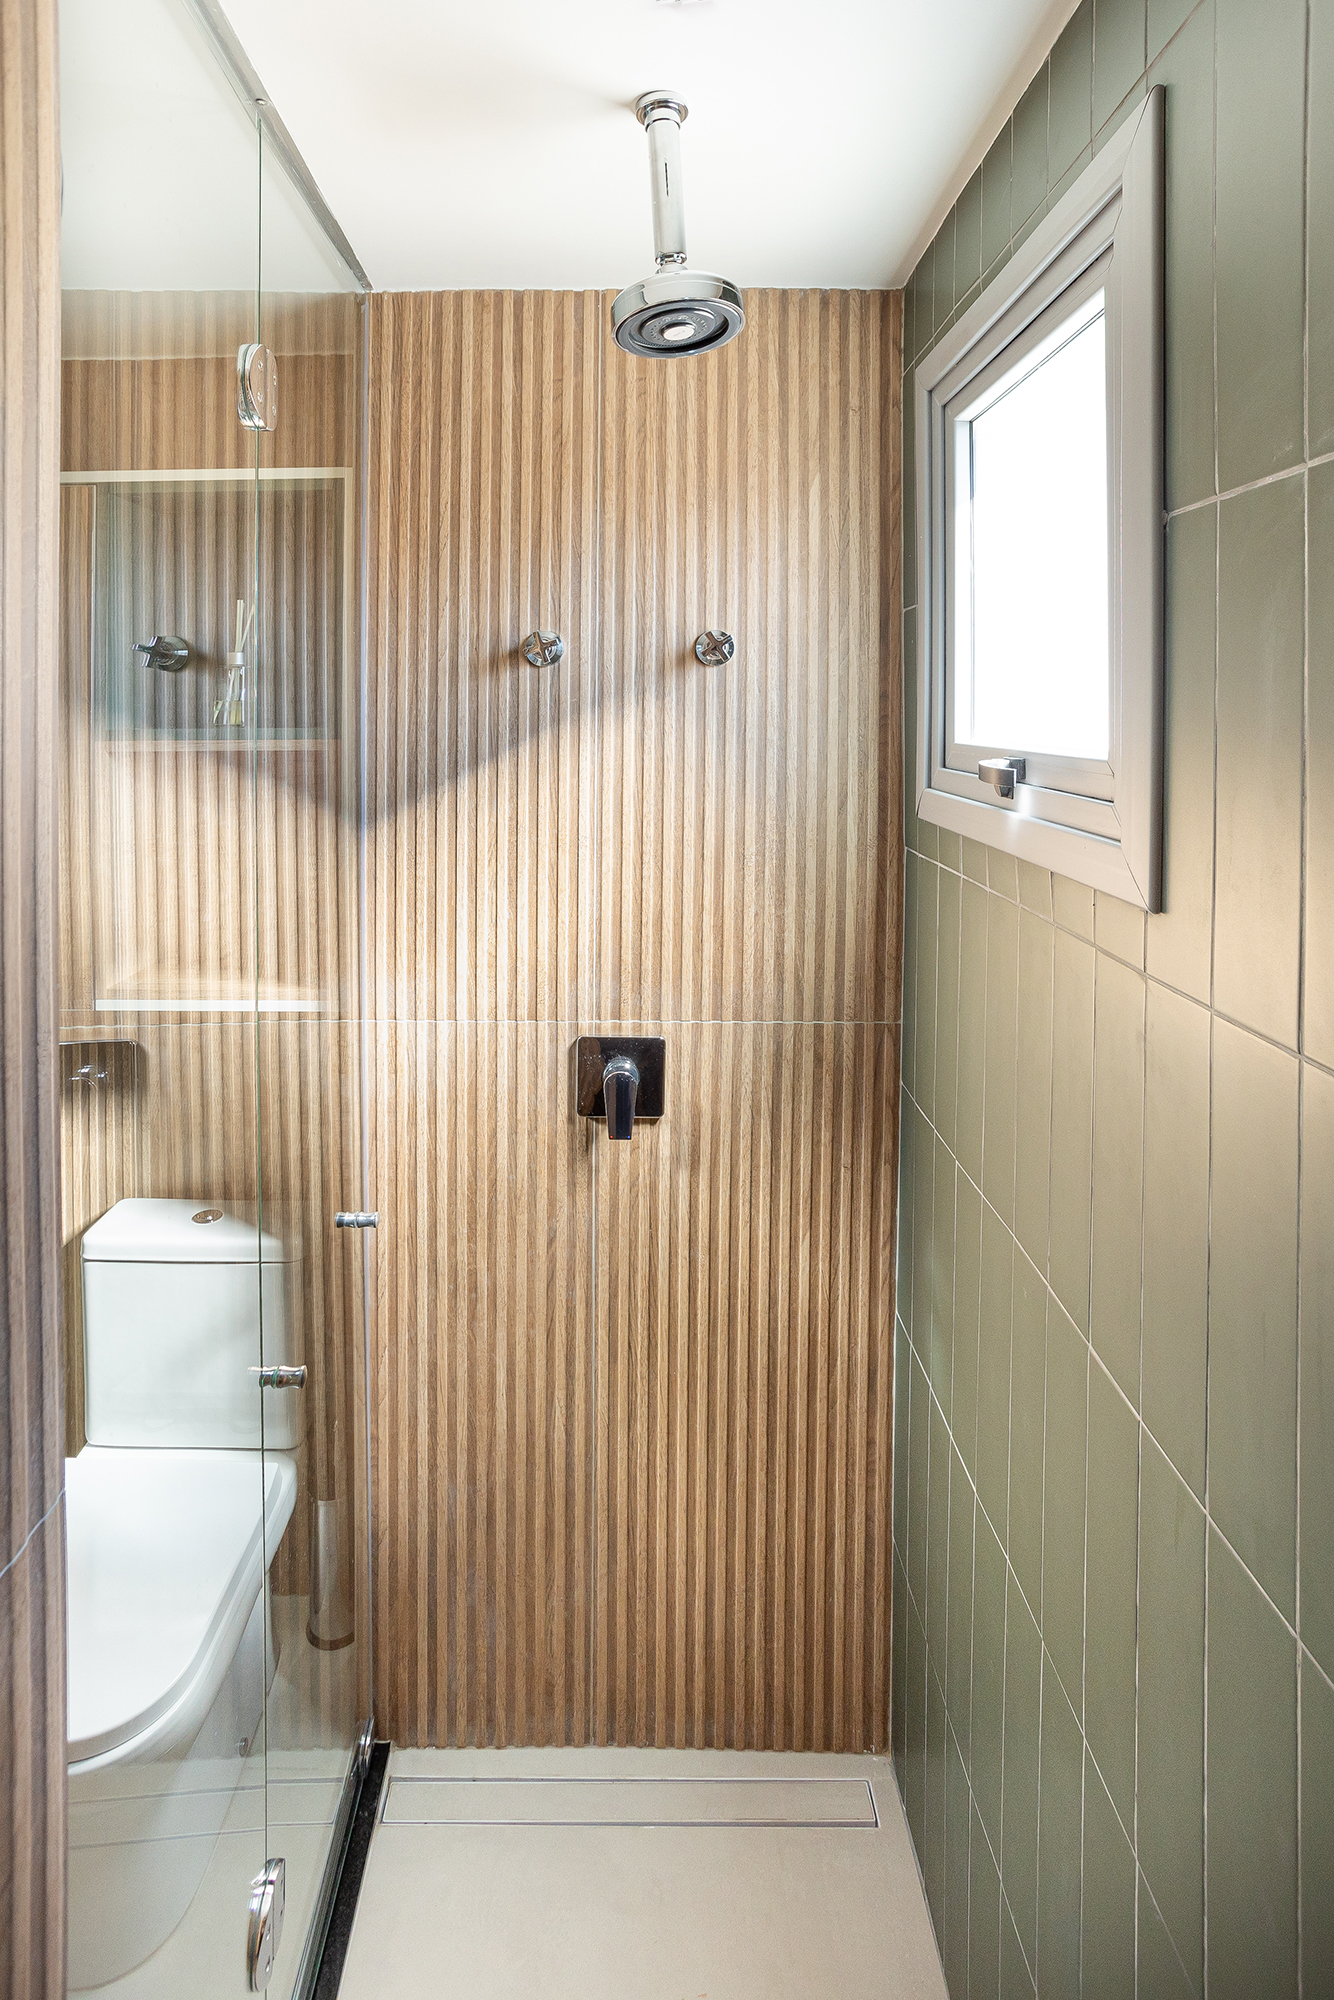 Apê de 36 m² tem lavanderia, home office e banheiro com chuveiro duplo. Projeto Loft 7 Arquitetura. Na foto, banheiro com ripado na parede.